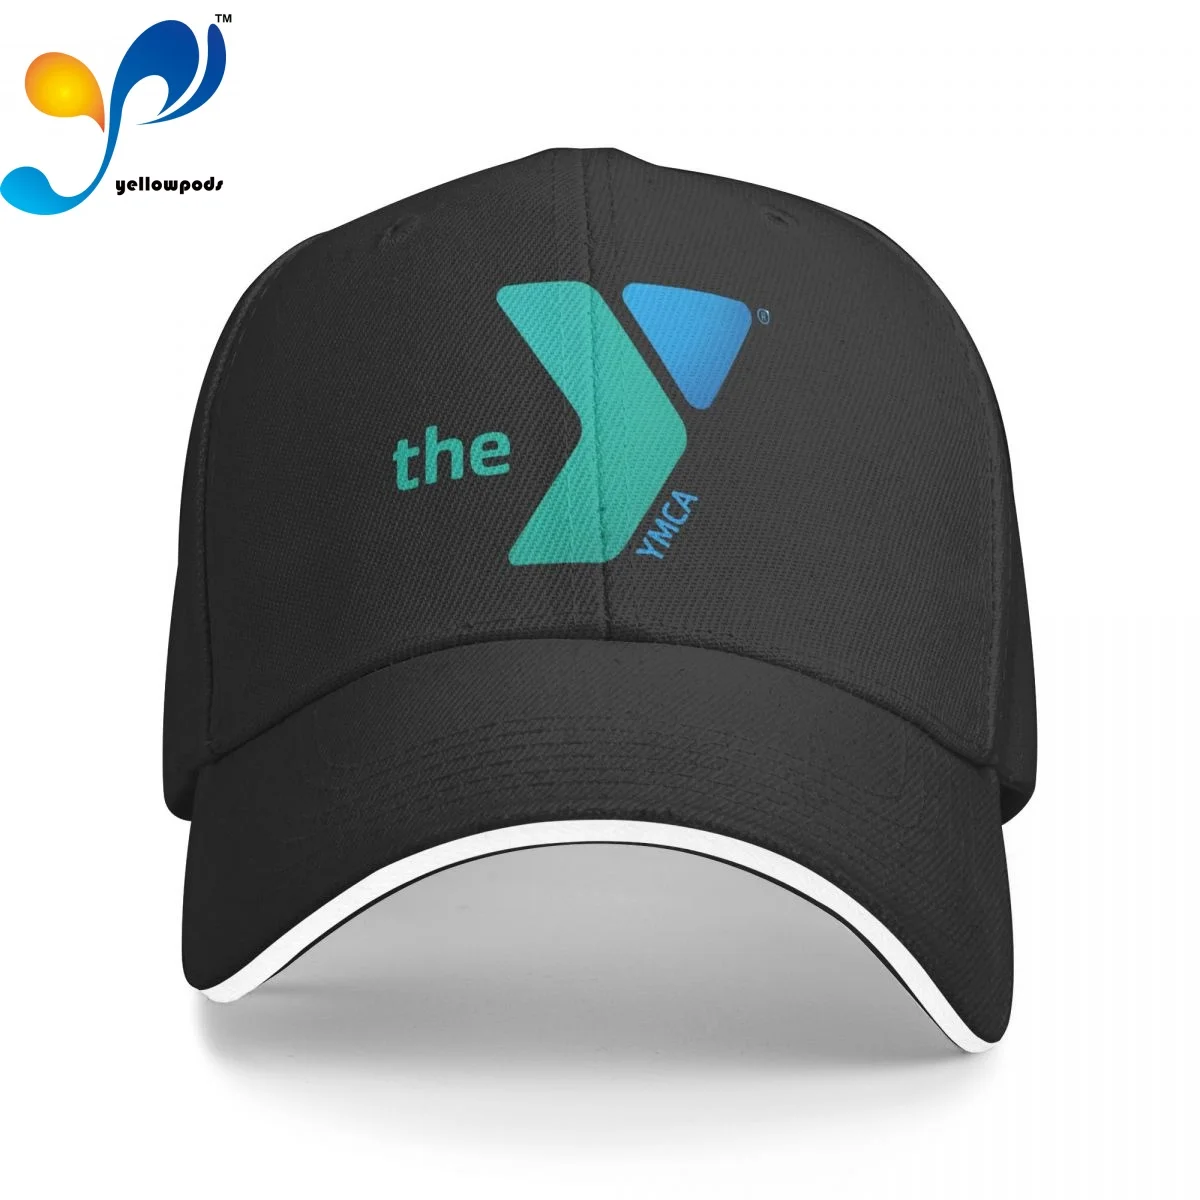 

Download A Hires Ymca Y Snapback Trucker Cap Snapback Hat for Men Baseball Mens Hats Caps for Logo